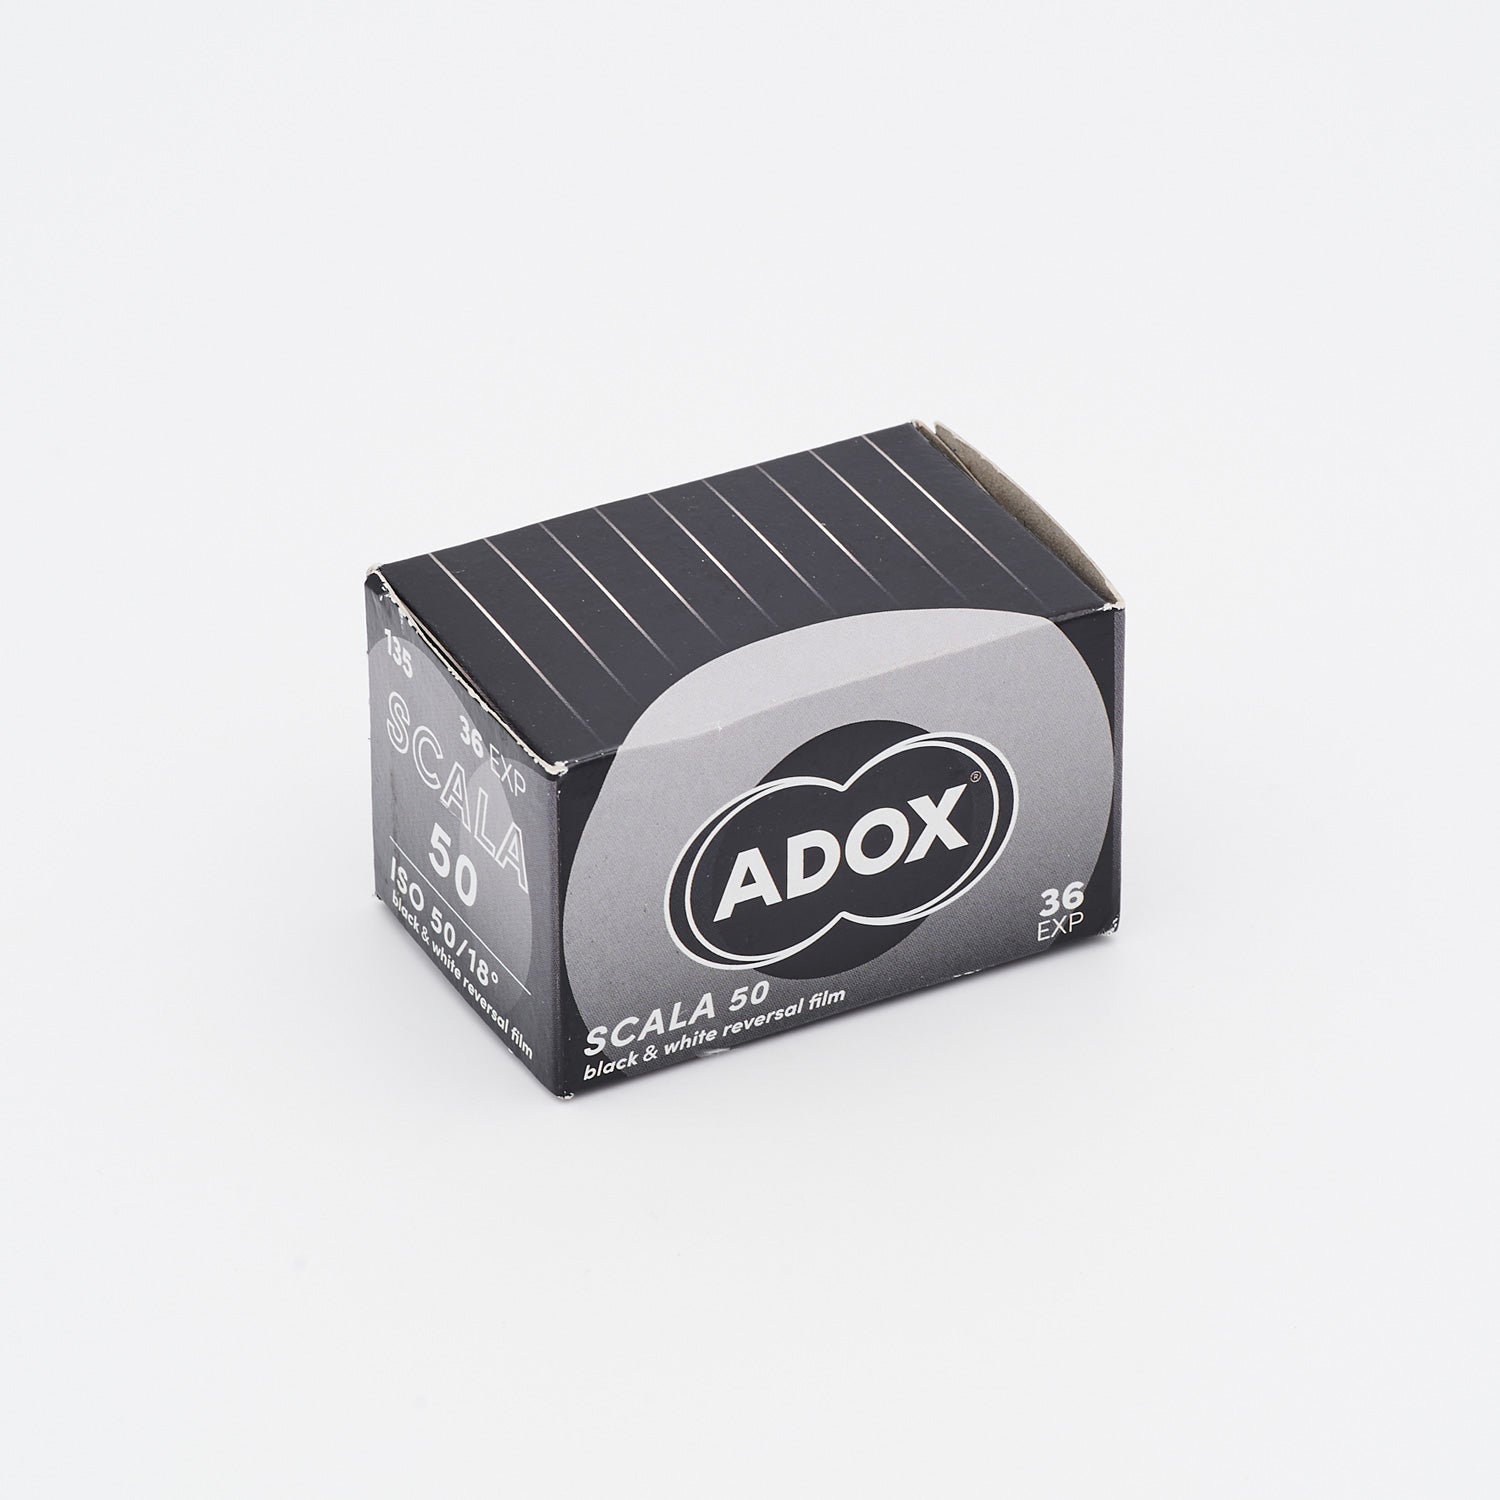 ADOX SCALA 50 SW-Diafilm 135-36 (Kleinbild)